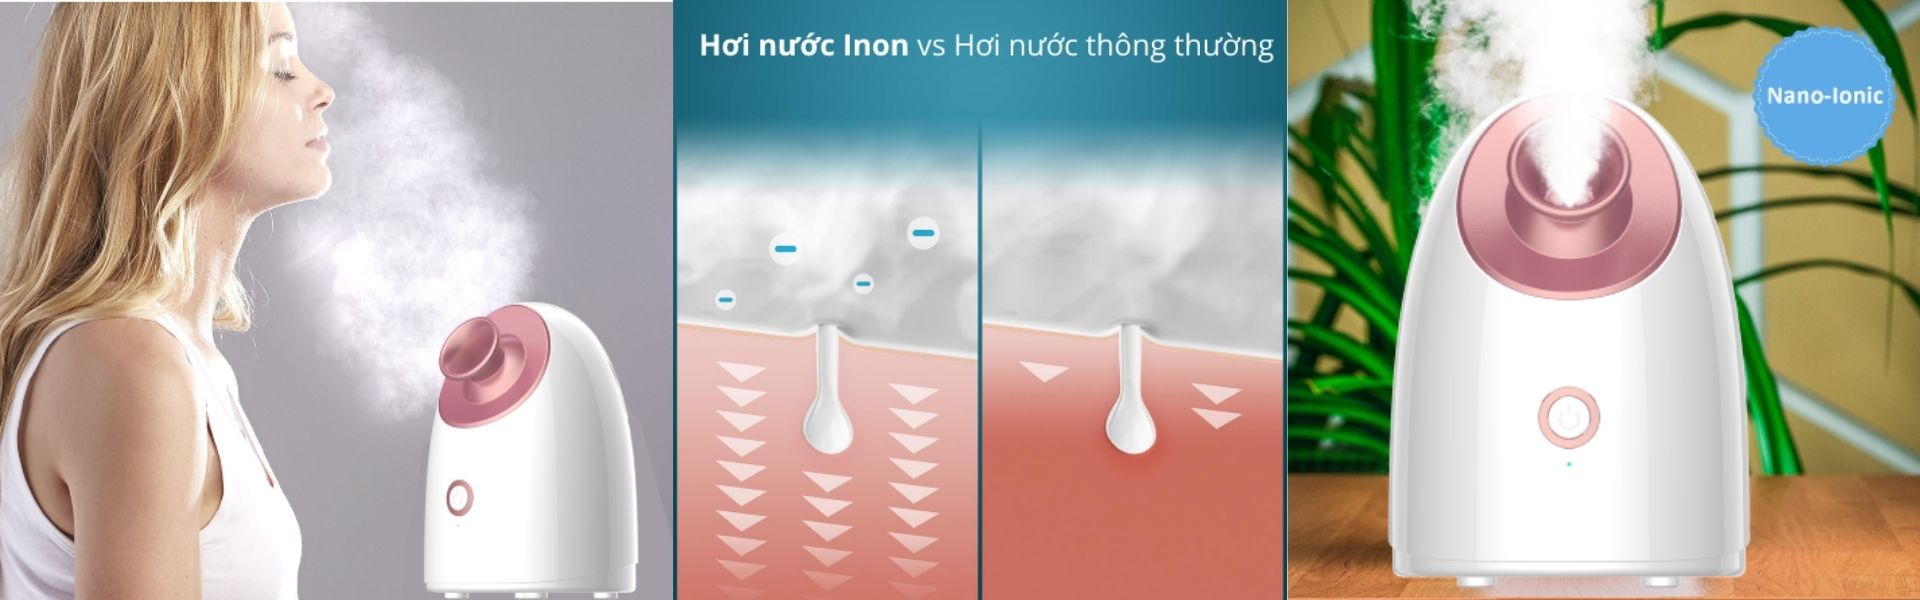 Máy xông hơi mini nano ion giữ ẩm tại nhà - SWEET DREAM